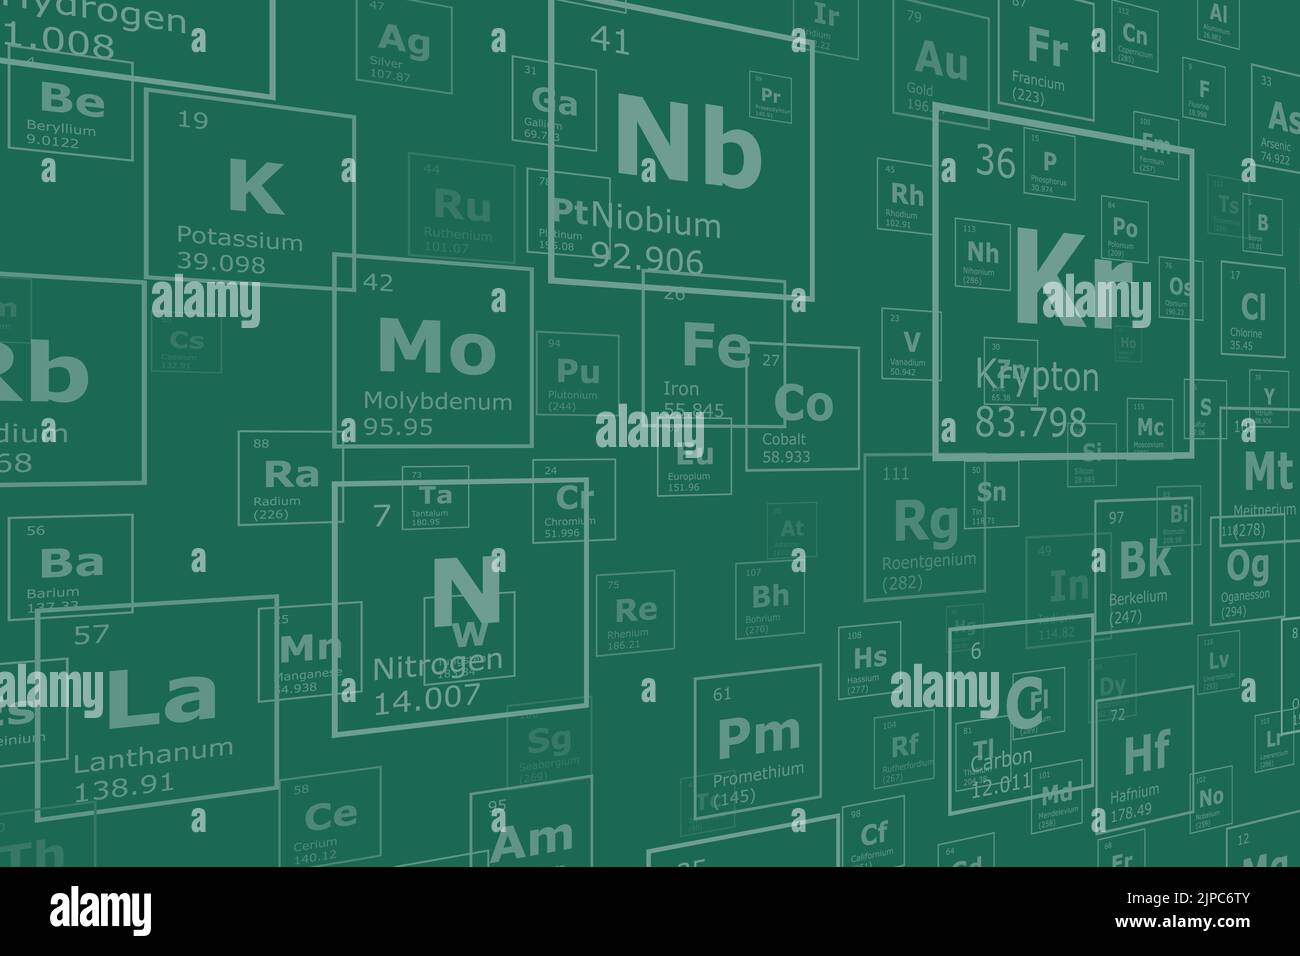 Hintergrund in Perspektive der chemischen Elemente des Periodensystems, Ordnungszahl, Atomgewicht, Name und Symbol des Elements auf einem grünen Rücken Stock Vektor